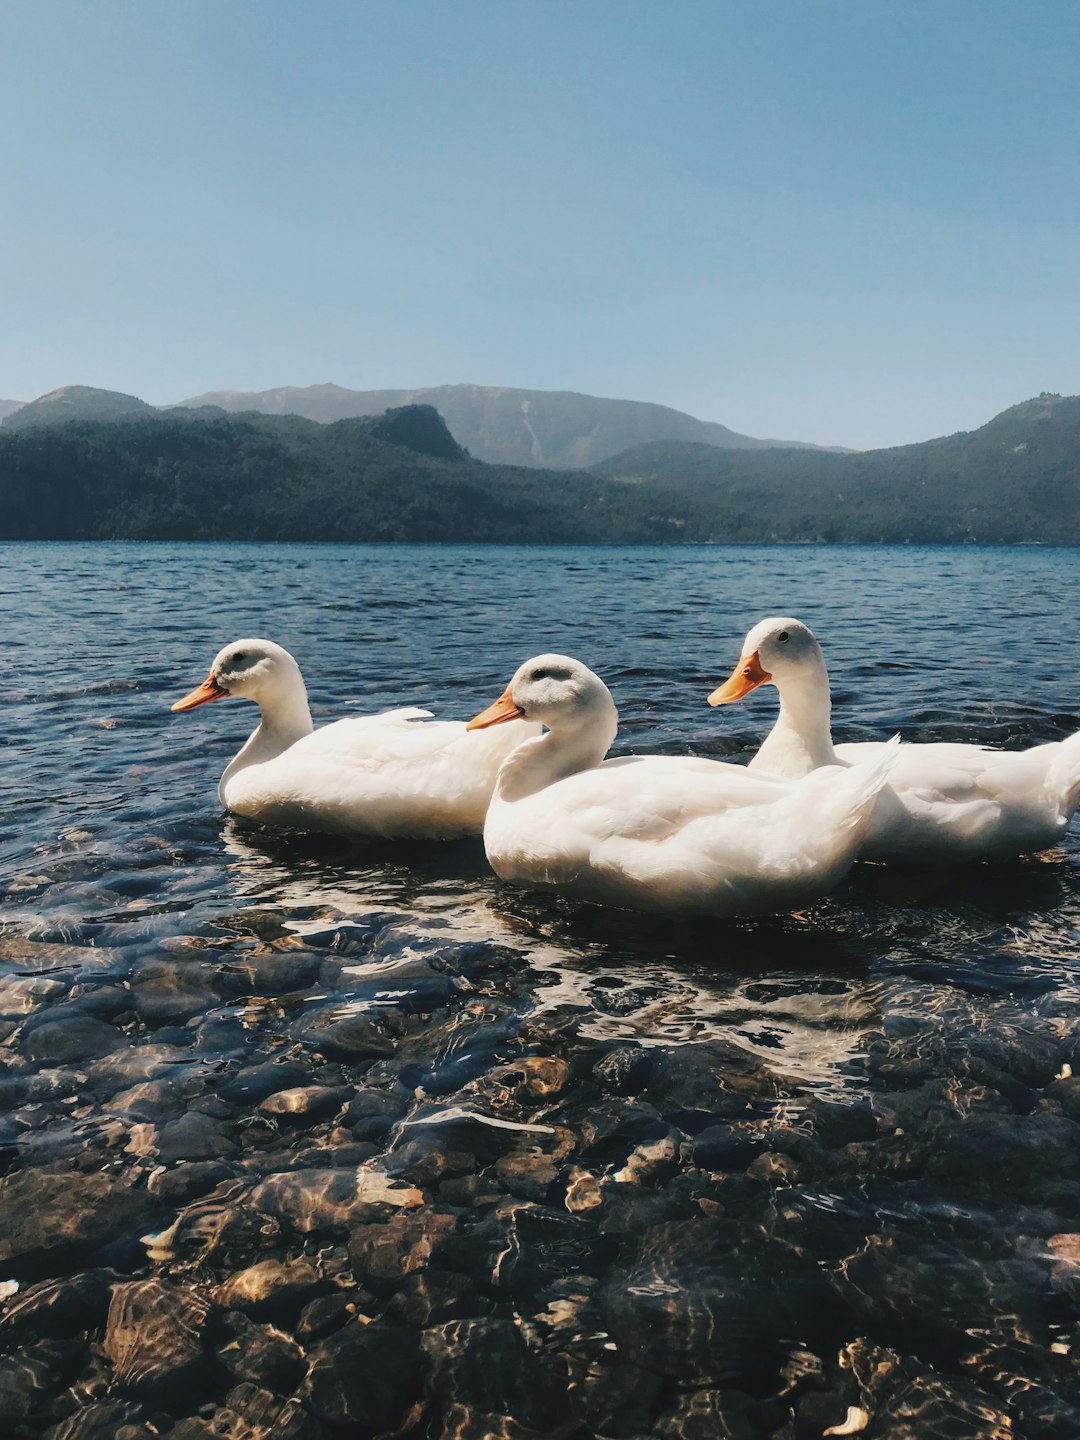 three white ducks on body of water